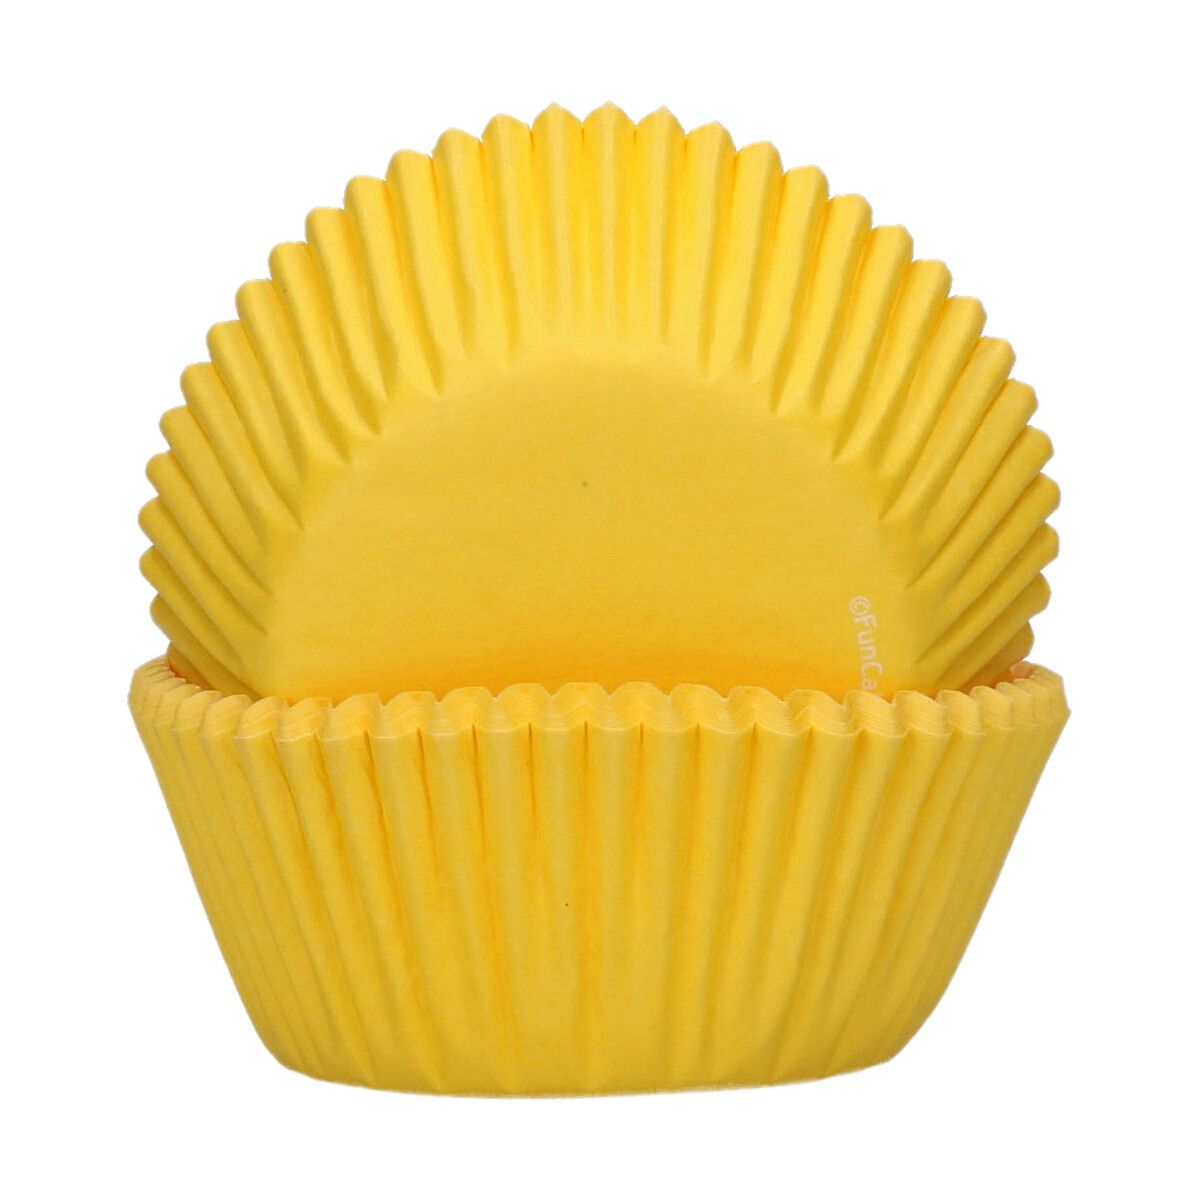 Muffinförmchen gelb